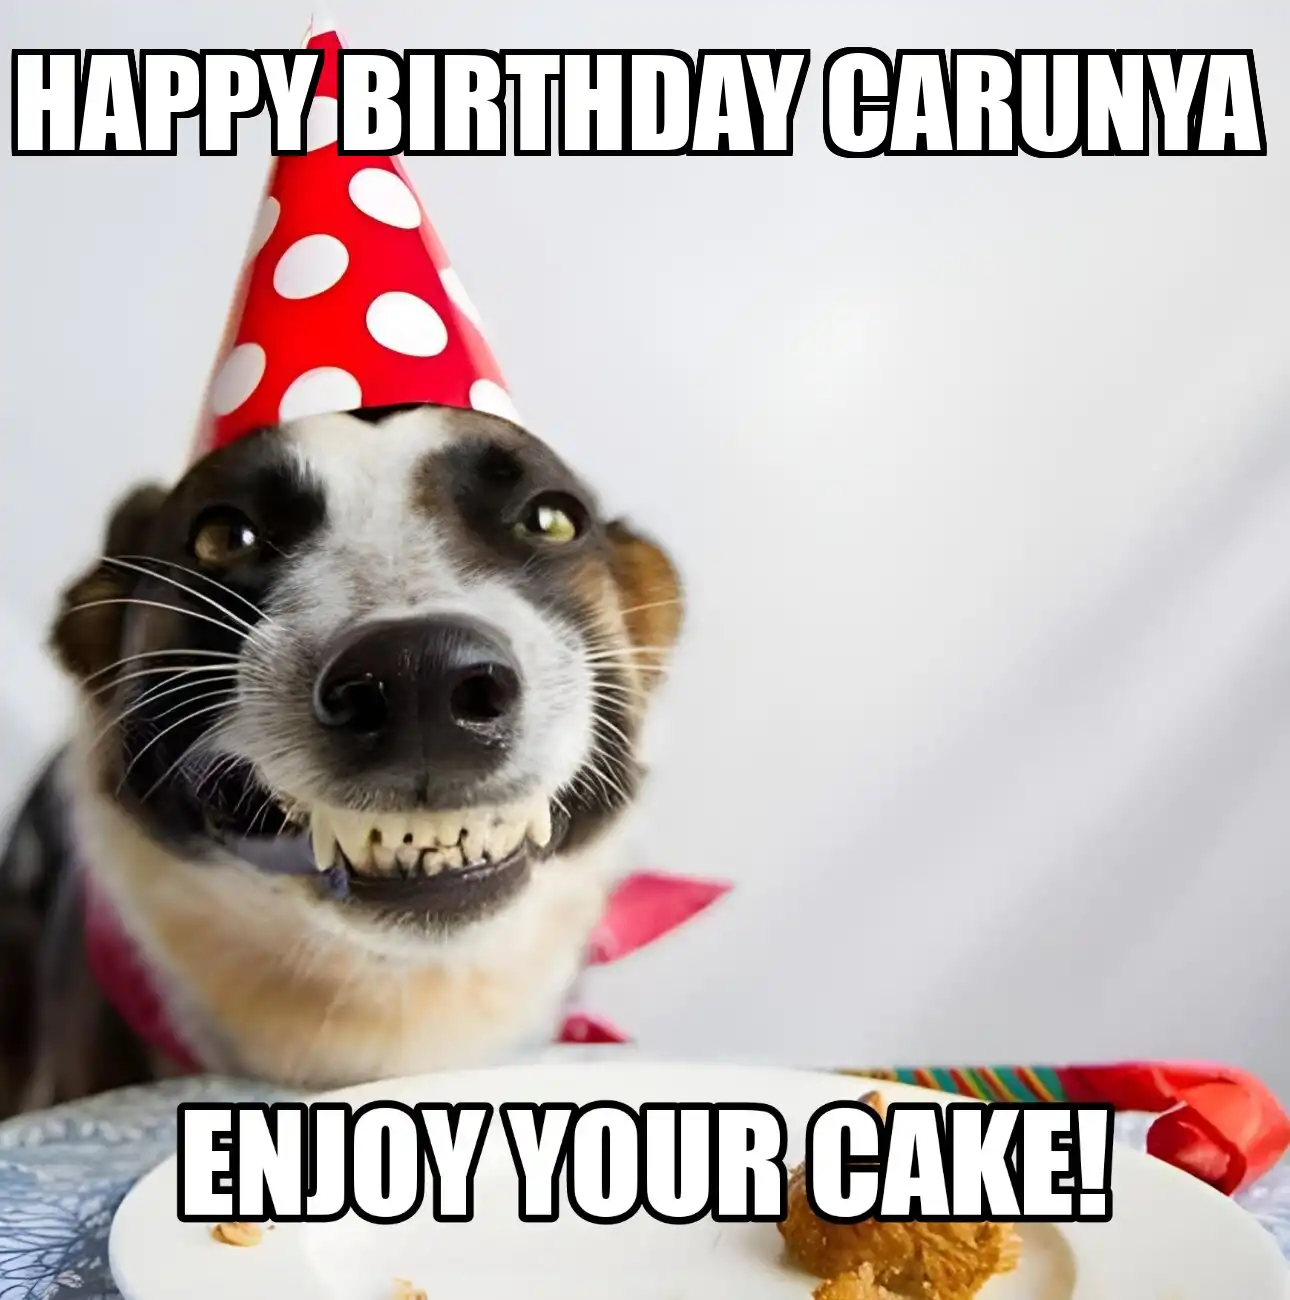 Happy Birthday Carunya Enjoy Your Cake Dog Meme